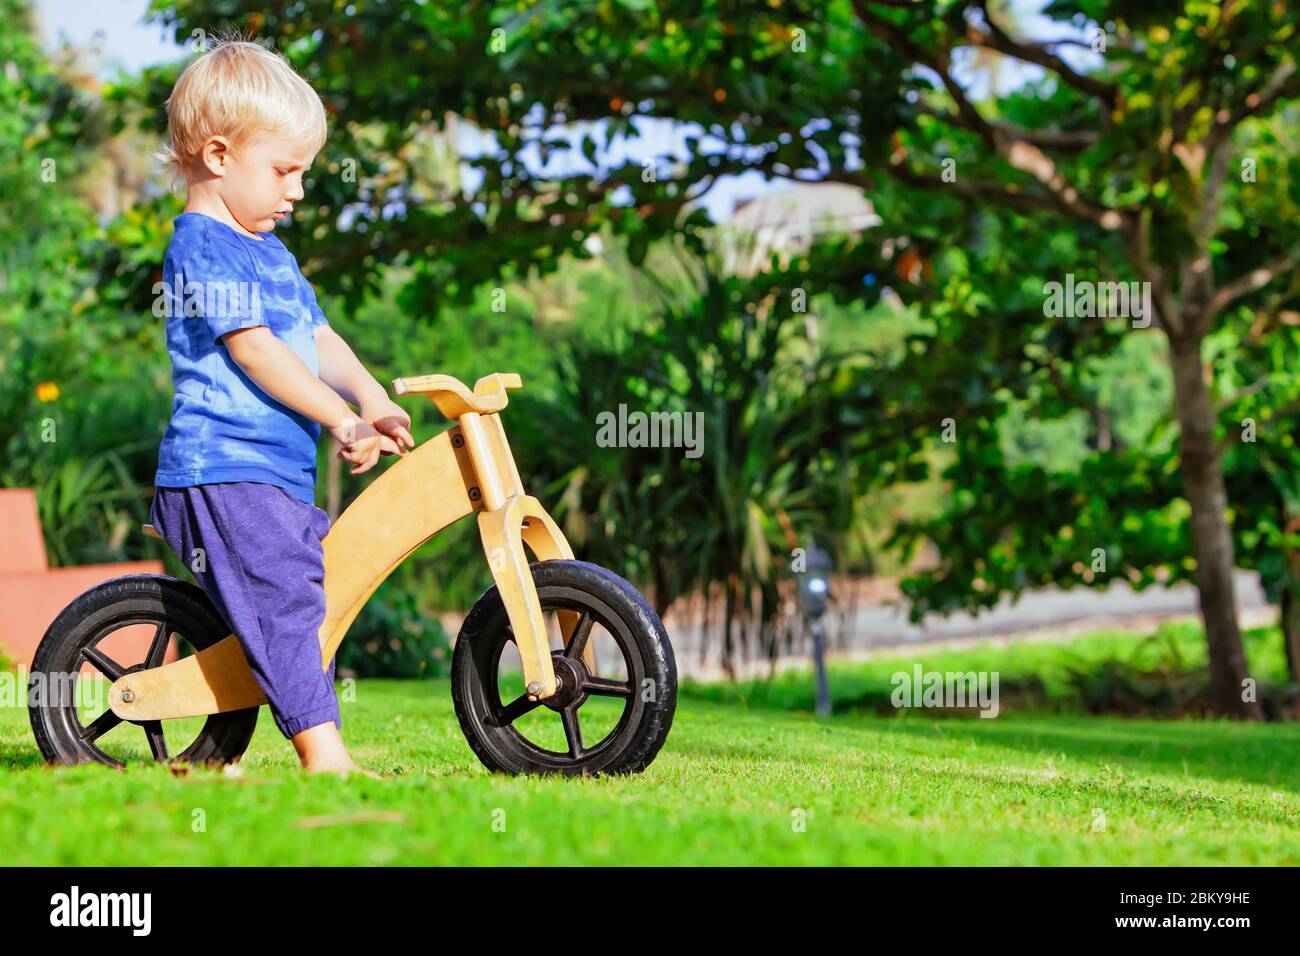 2 - 3 ans joyeux garçon à cheval un vélo d'équilibre en bois (vélo de course). Joyeux enfant pieds nus apprenant à se mettre en roue, gardez l'équilibre sur la bicyclette d'entraînement dans le jardin Banque D'Images